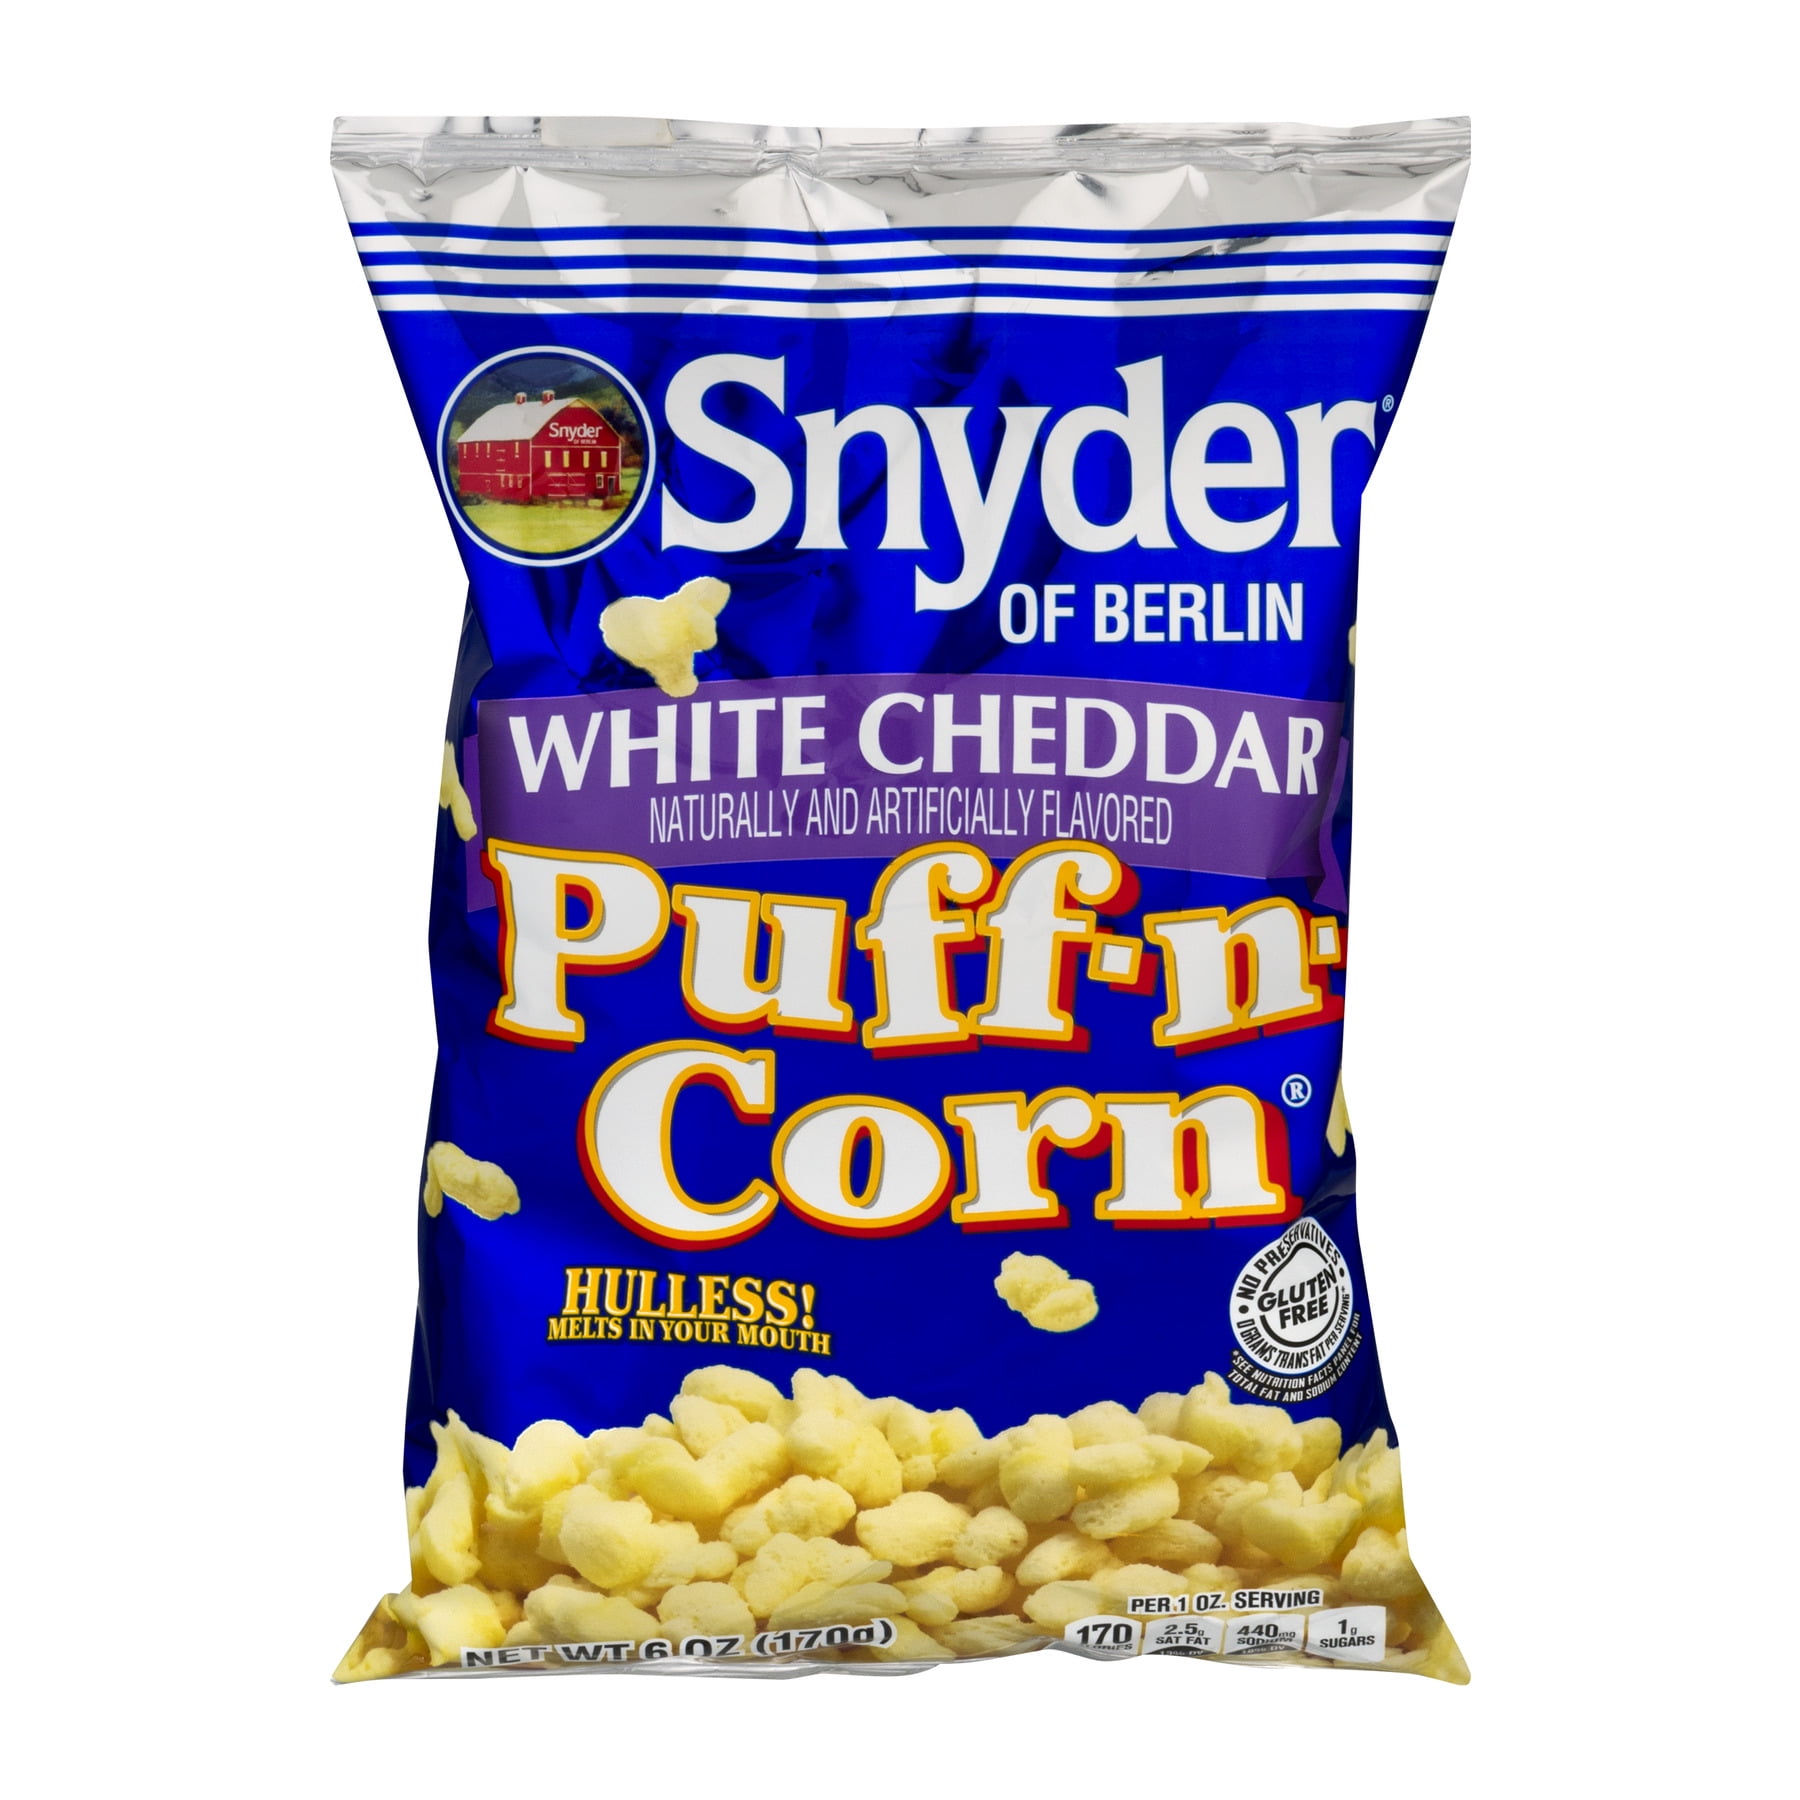 Snyder of Berlin White Cheddar Puff-n-Corn 6 Oz